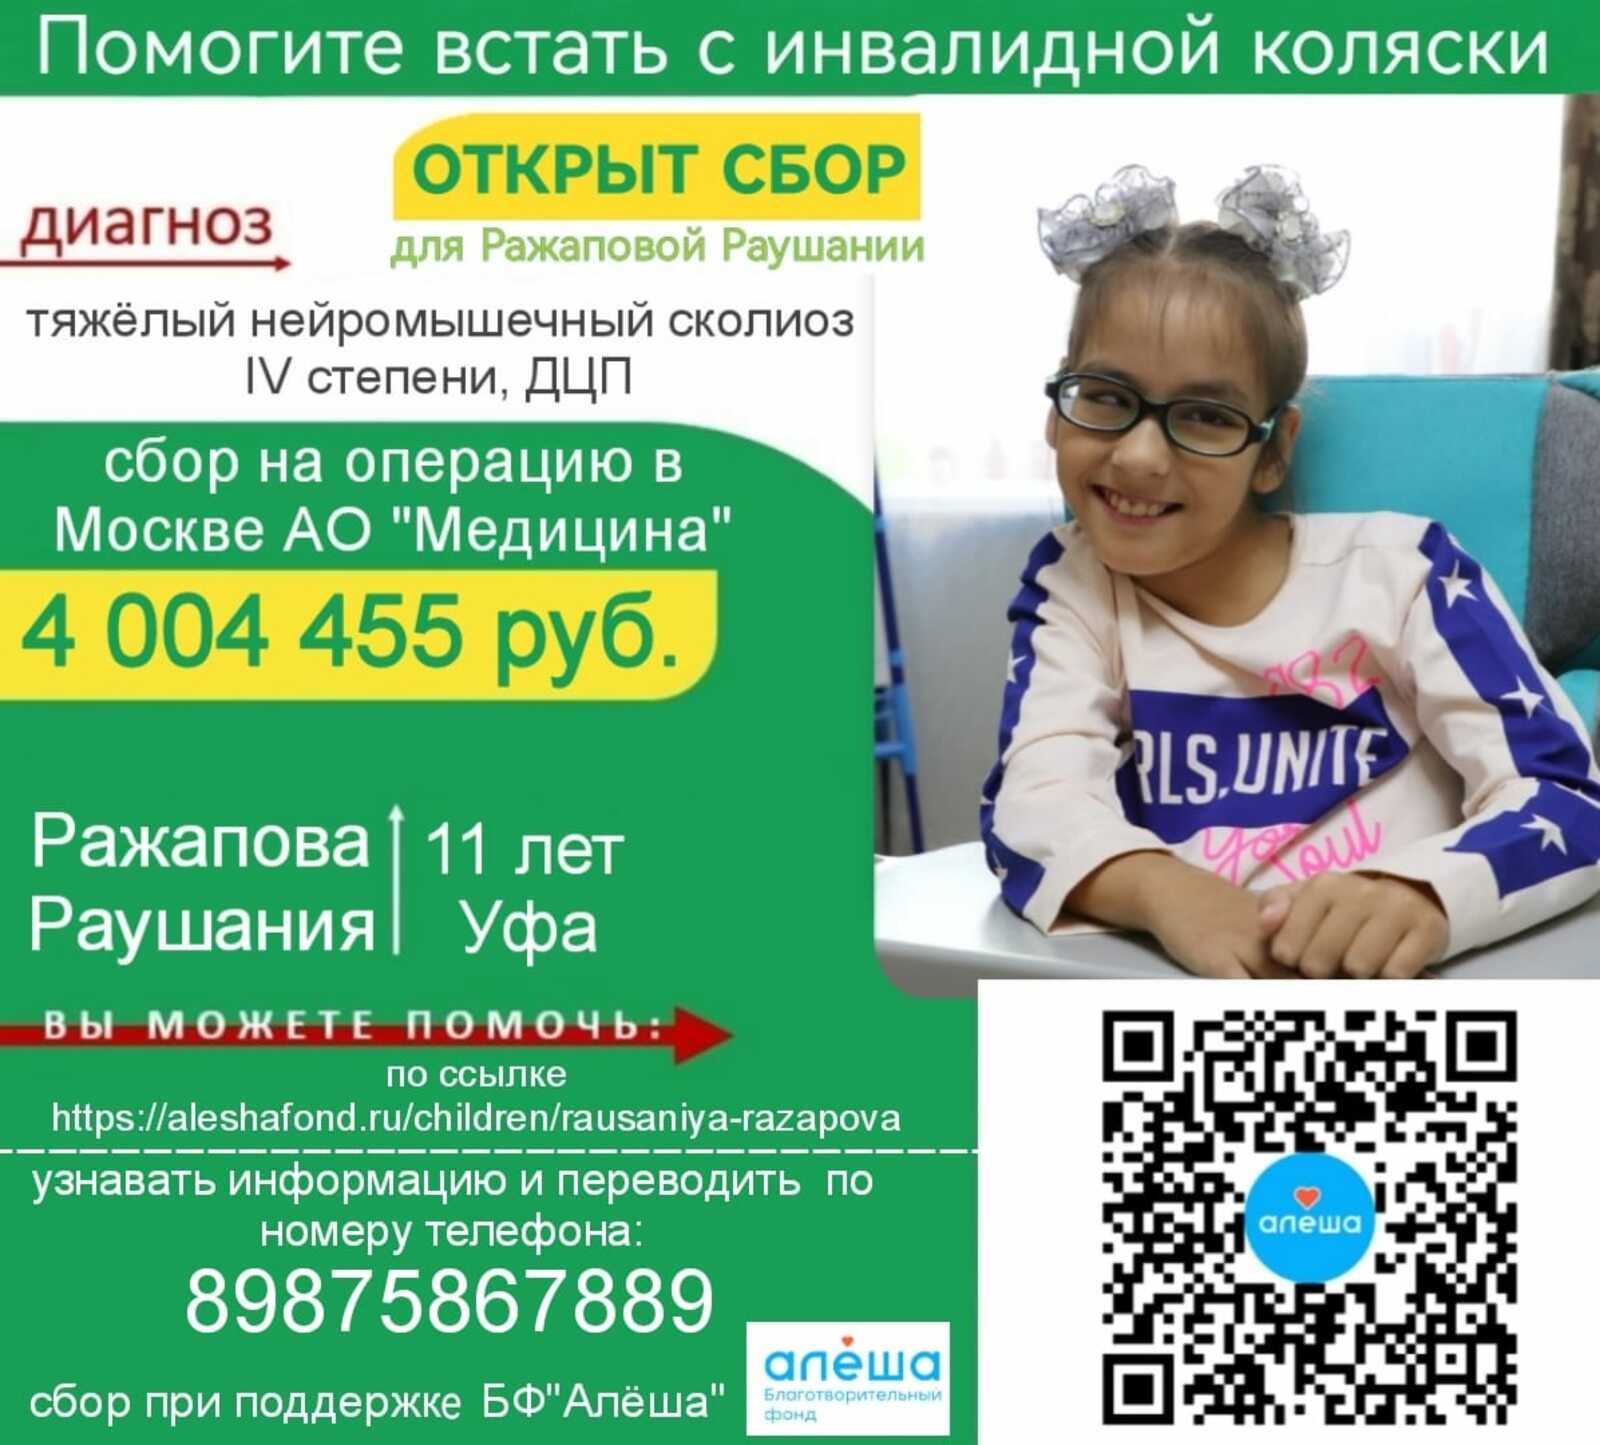 Девочке из Башкортостана нужна помощь!